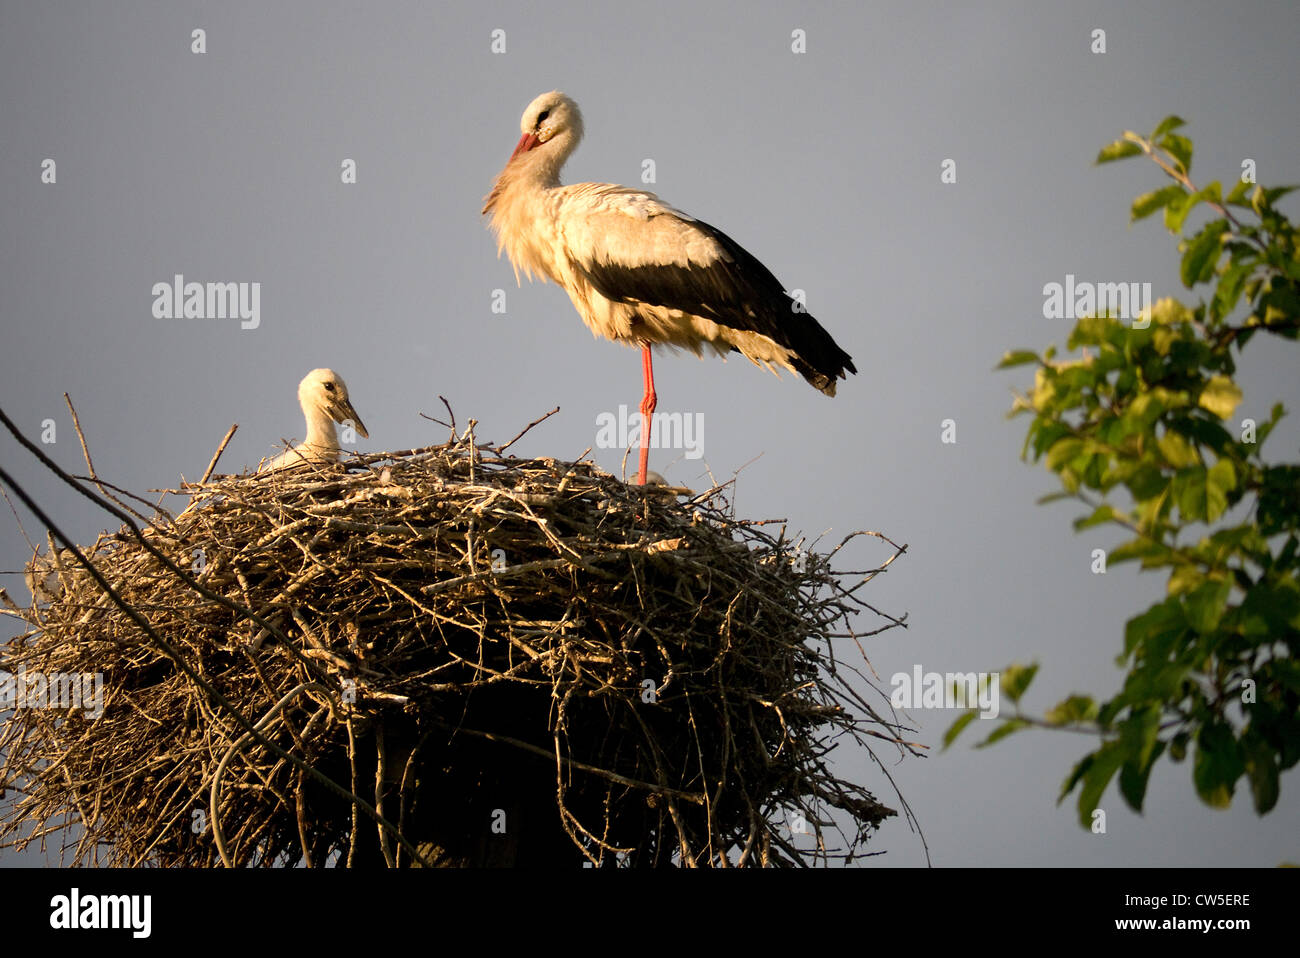 Nesting Stork's in Latvia Stock Photo